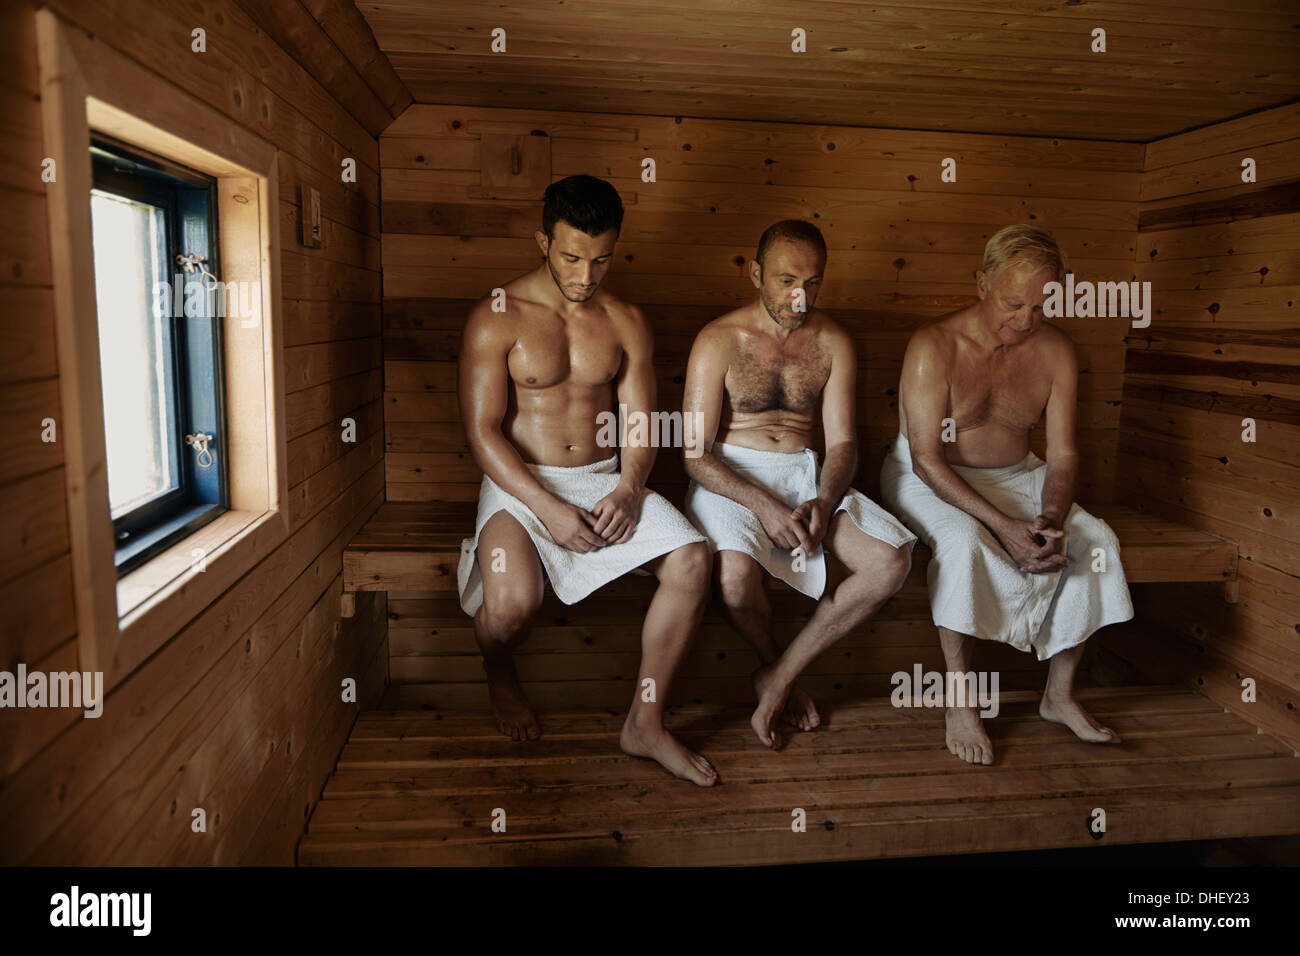 Мужики в бане фото